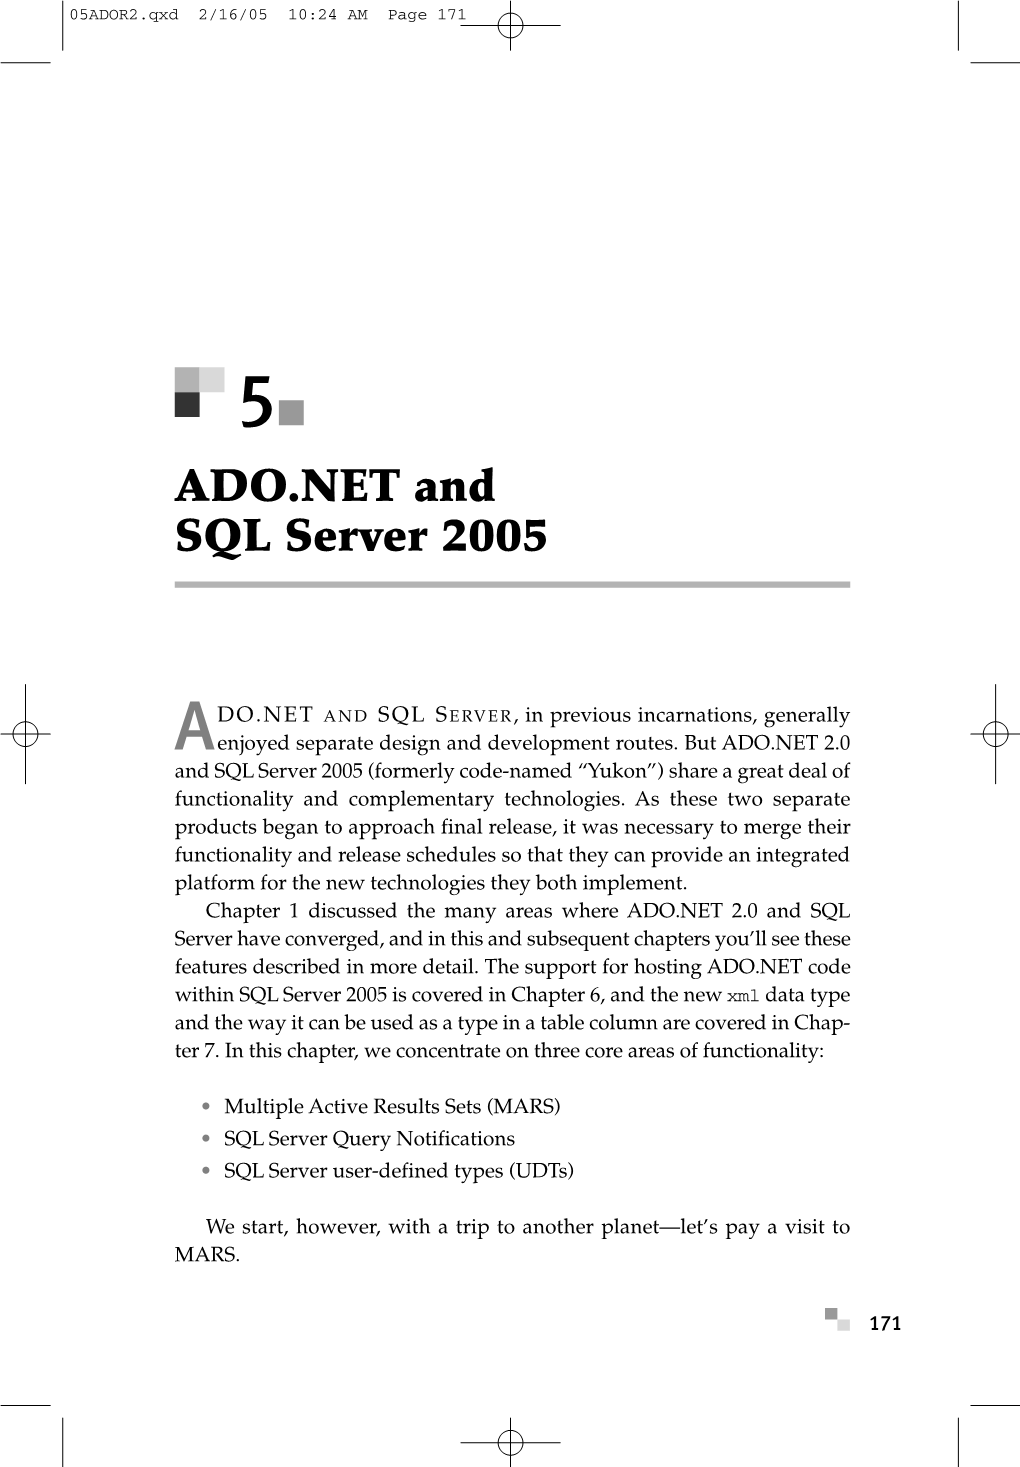 ADO.NET and SQL Server 2005